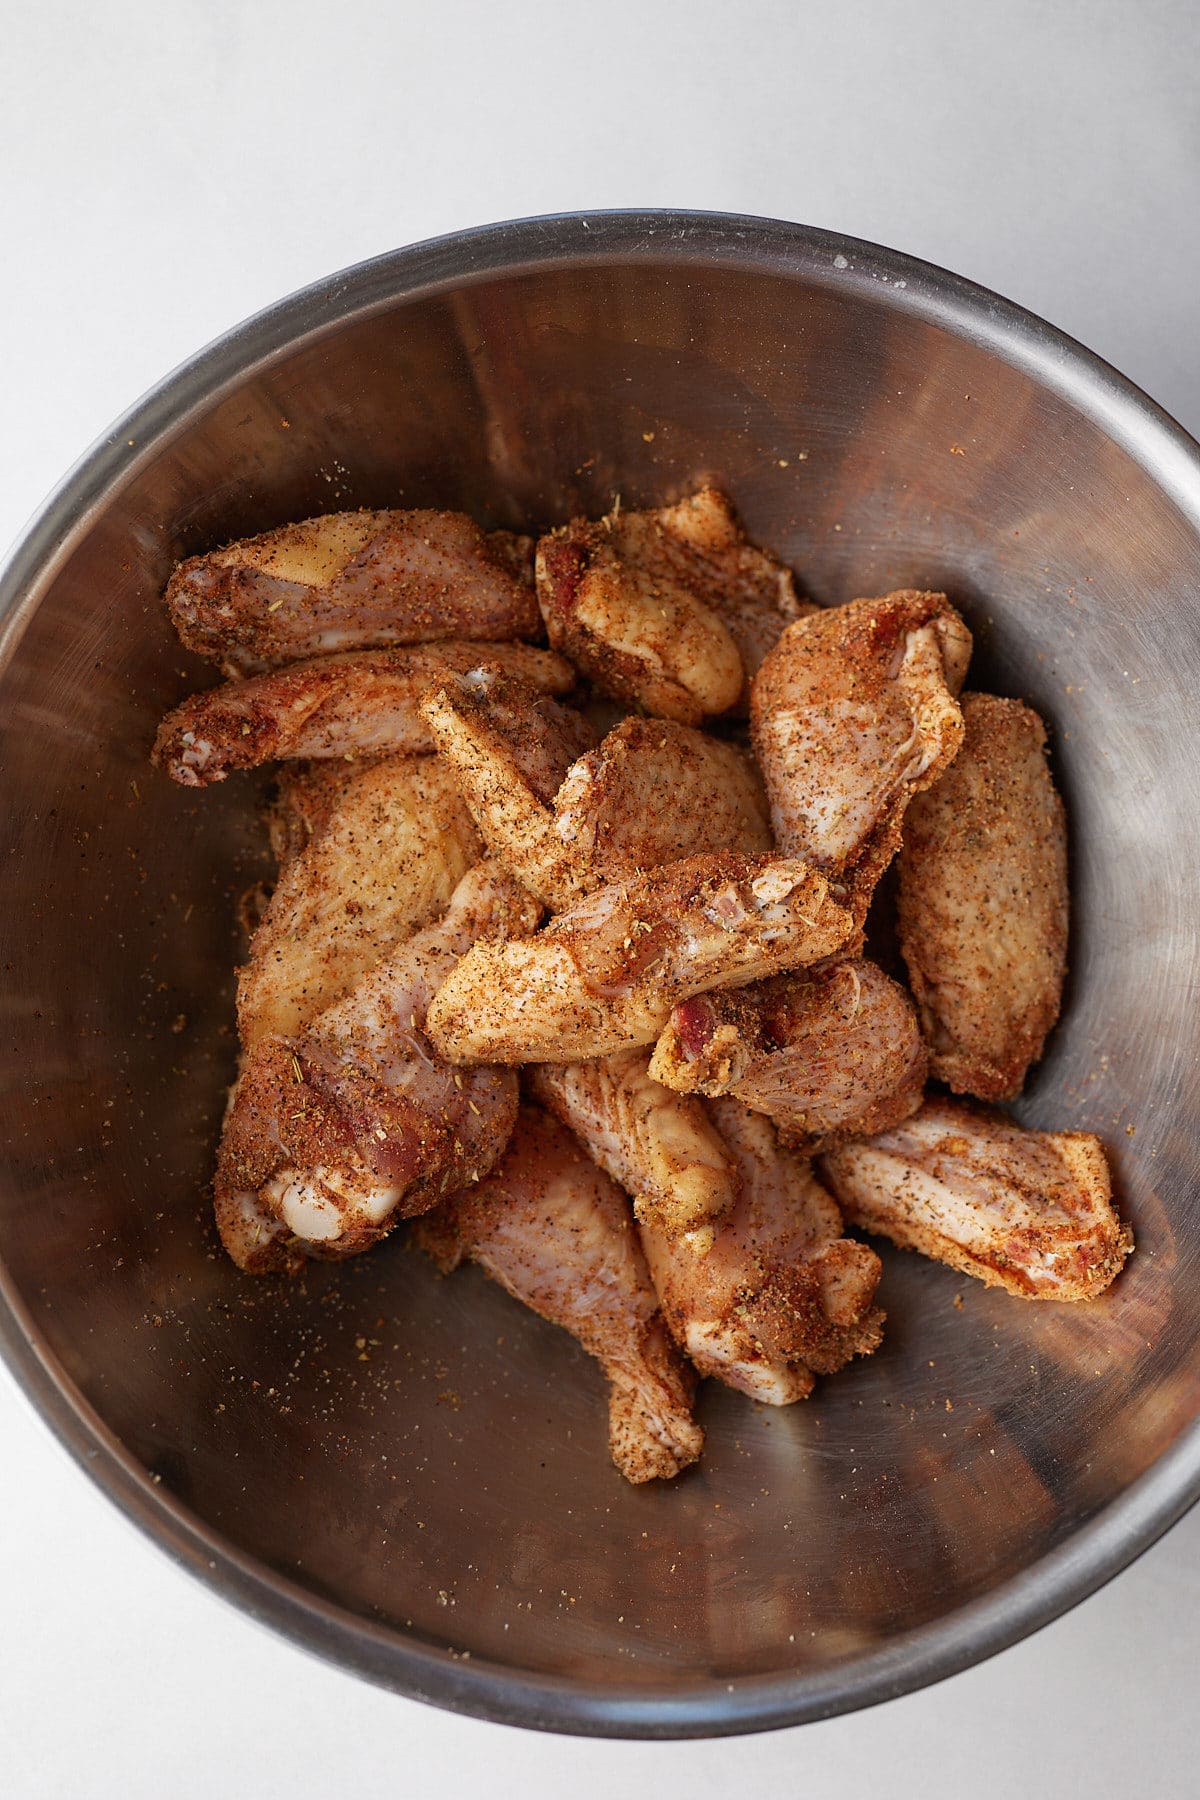 Chicken wings tossed in seasonings.